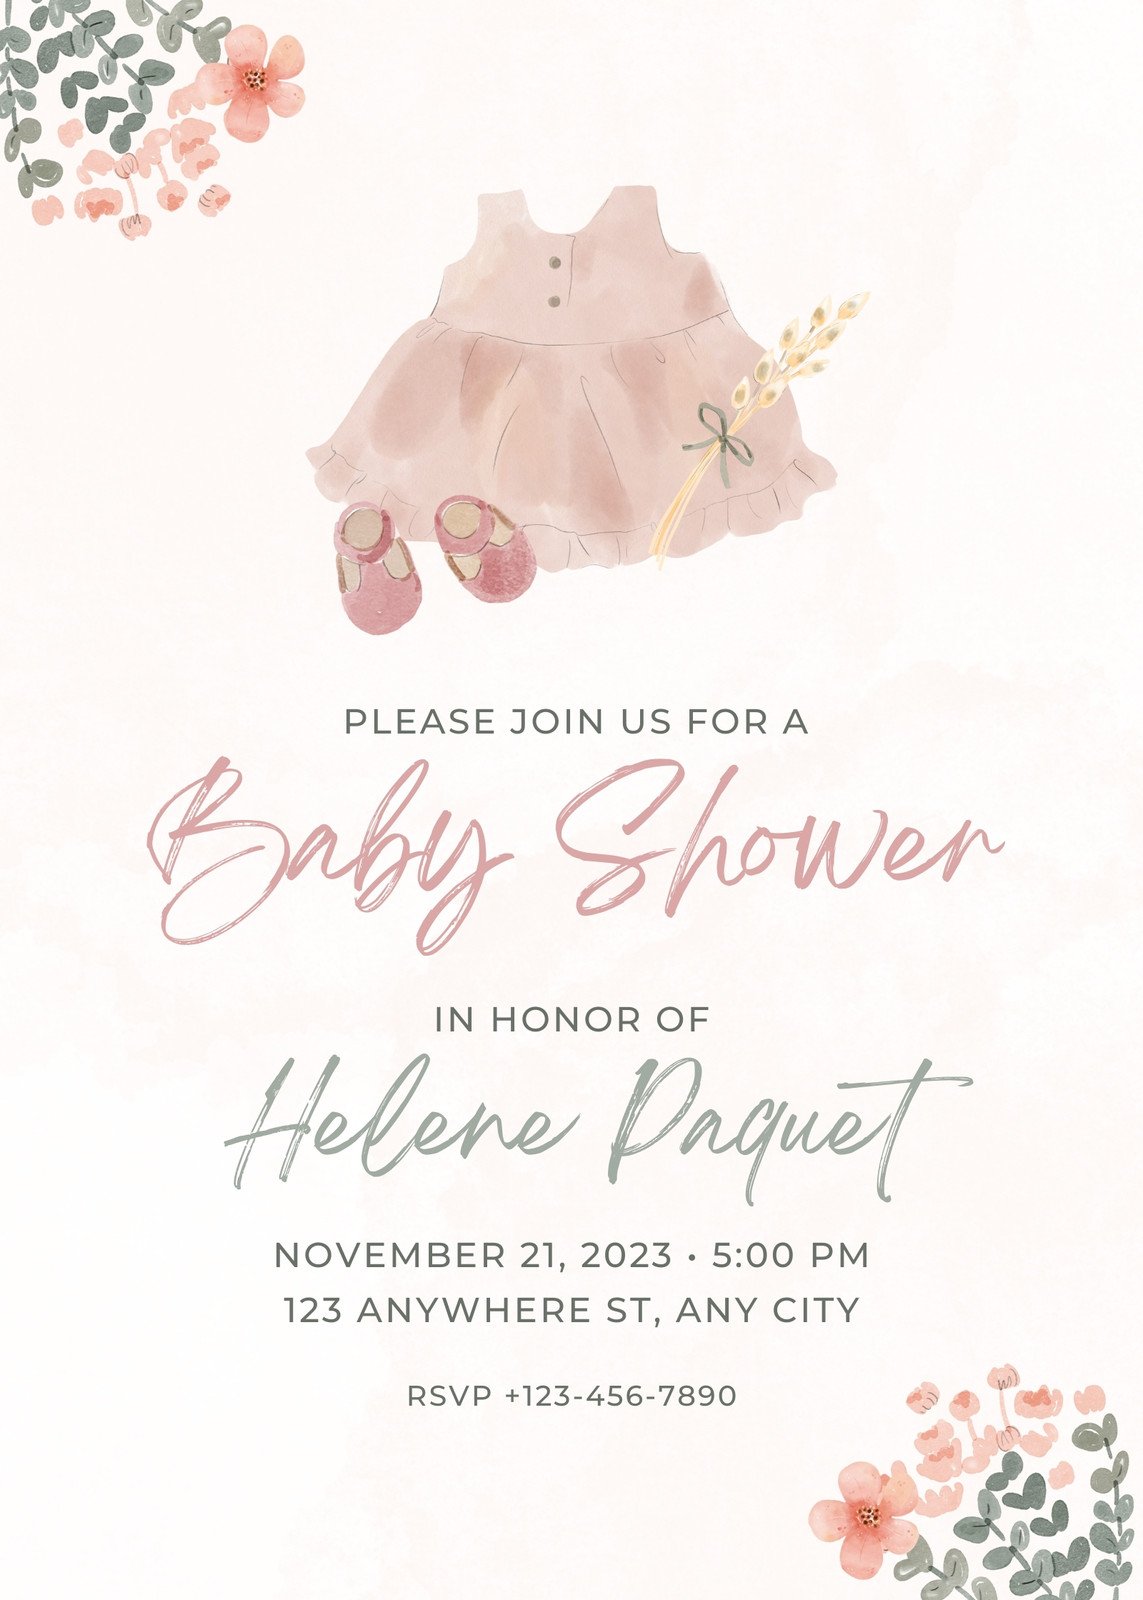 Baby shower gift list? | SHOWER • CENTER